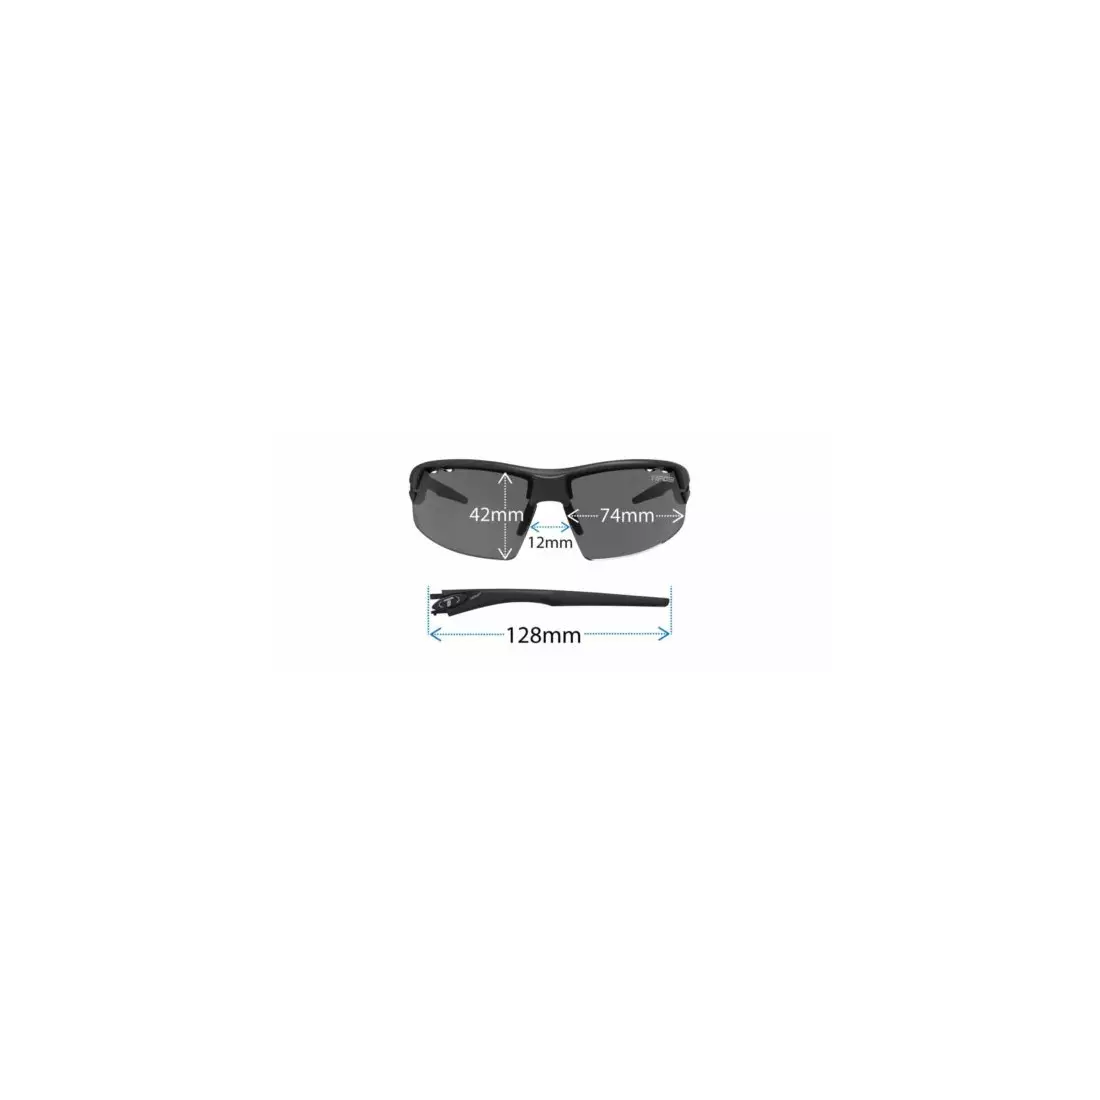 TIFOSI ochelari sport cu lentile înlocuibile crit matte black (Smoke, AC Red, Clear) TFI-1340100101